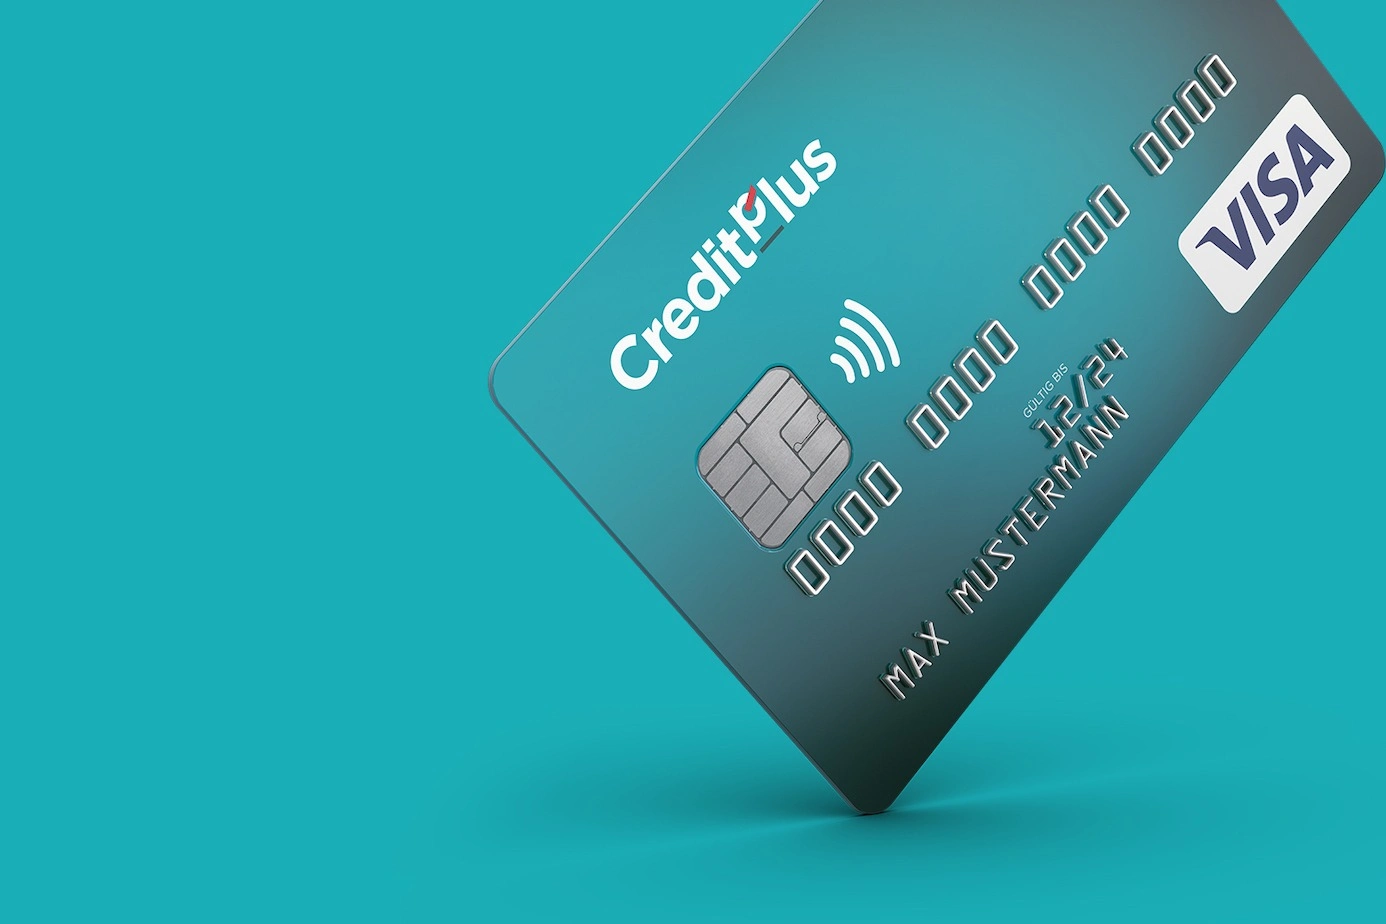 Einfach online beantragen<br/>Hallo Kreditkarte!